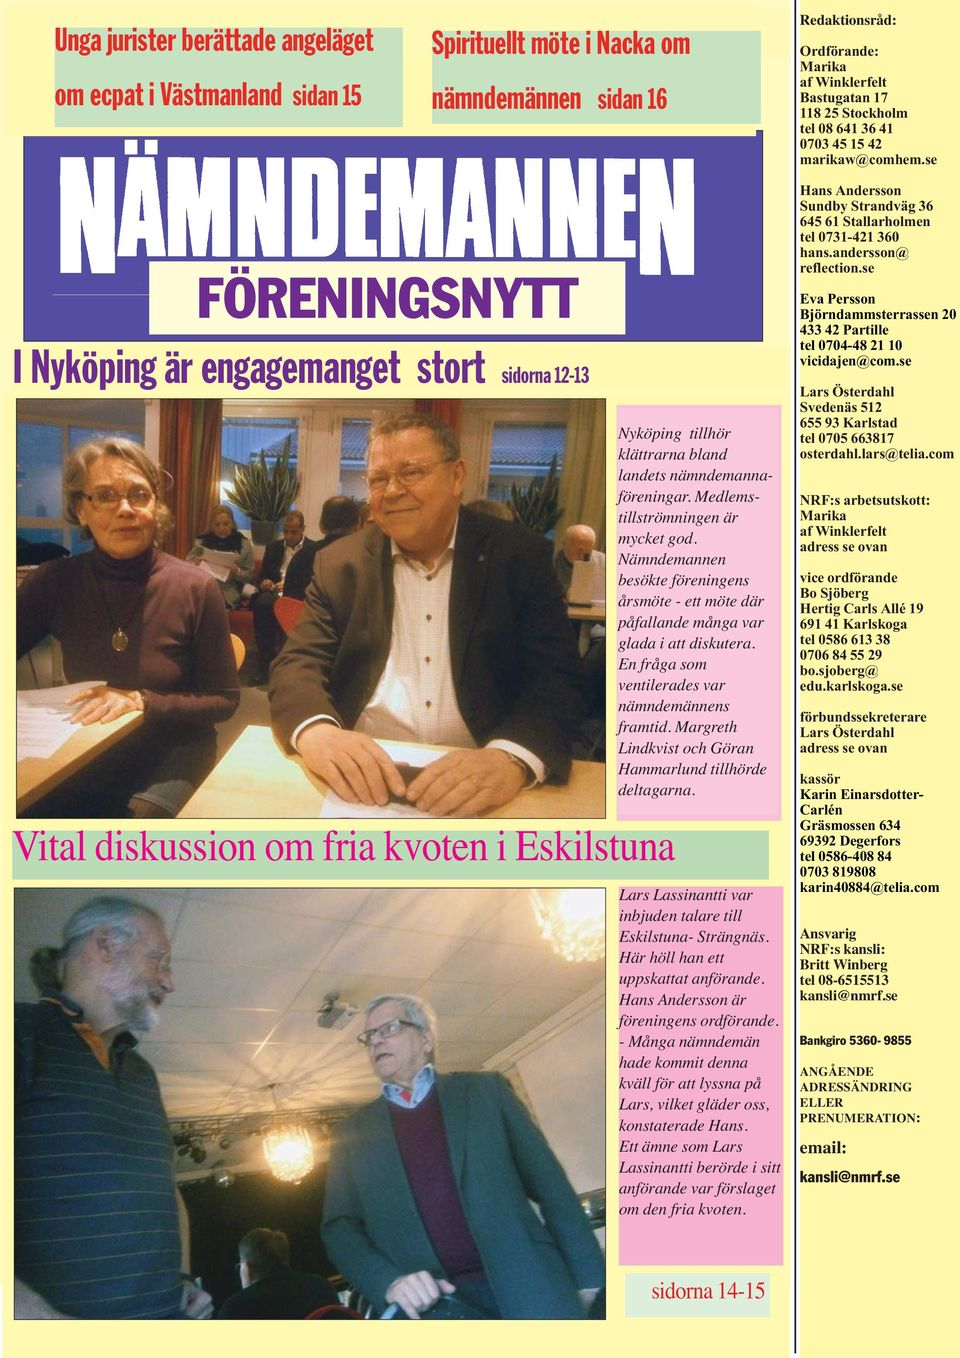 se FÖRENINGSNYTT I Nyköping är engagemanget stort sidorna 12-13 Vital diskussion om fria kvoten i Eskilstuna Nyköping tillhör klättrarna bland landets nämndemannaföreningar.